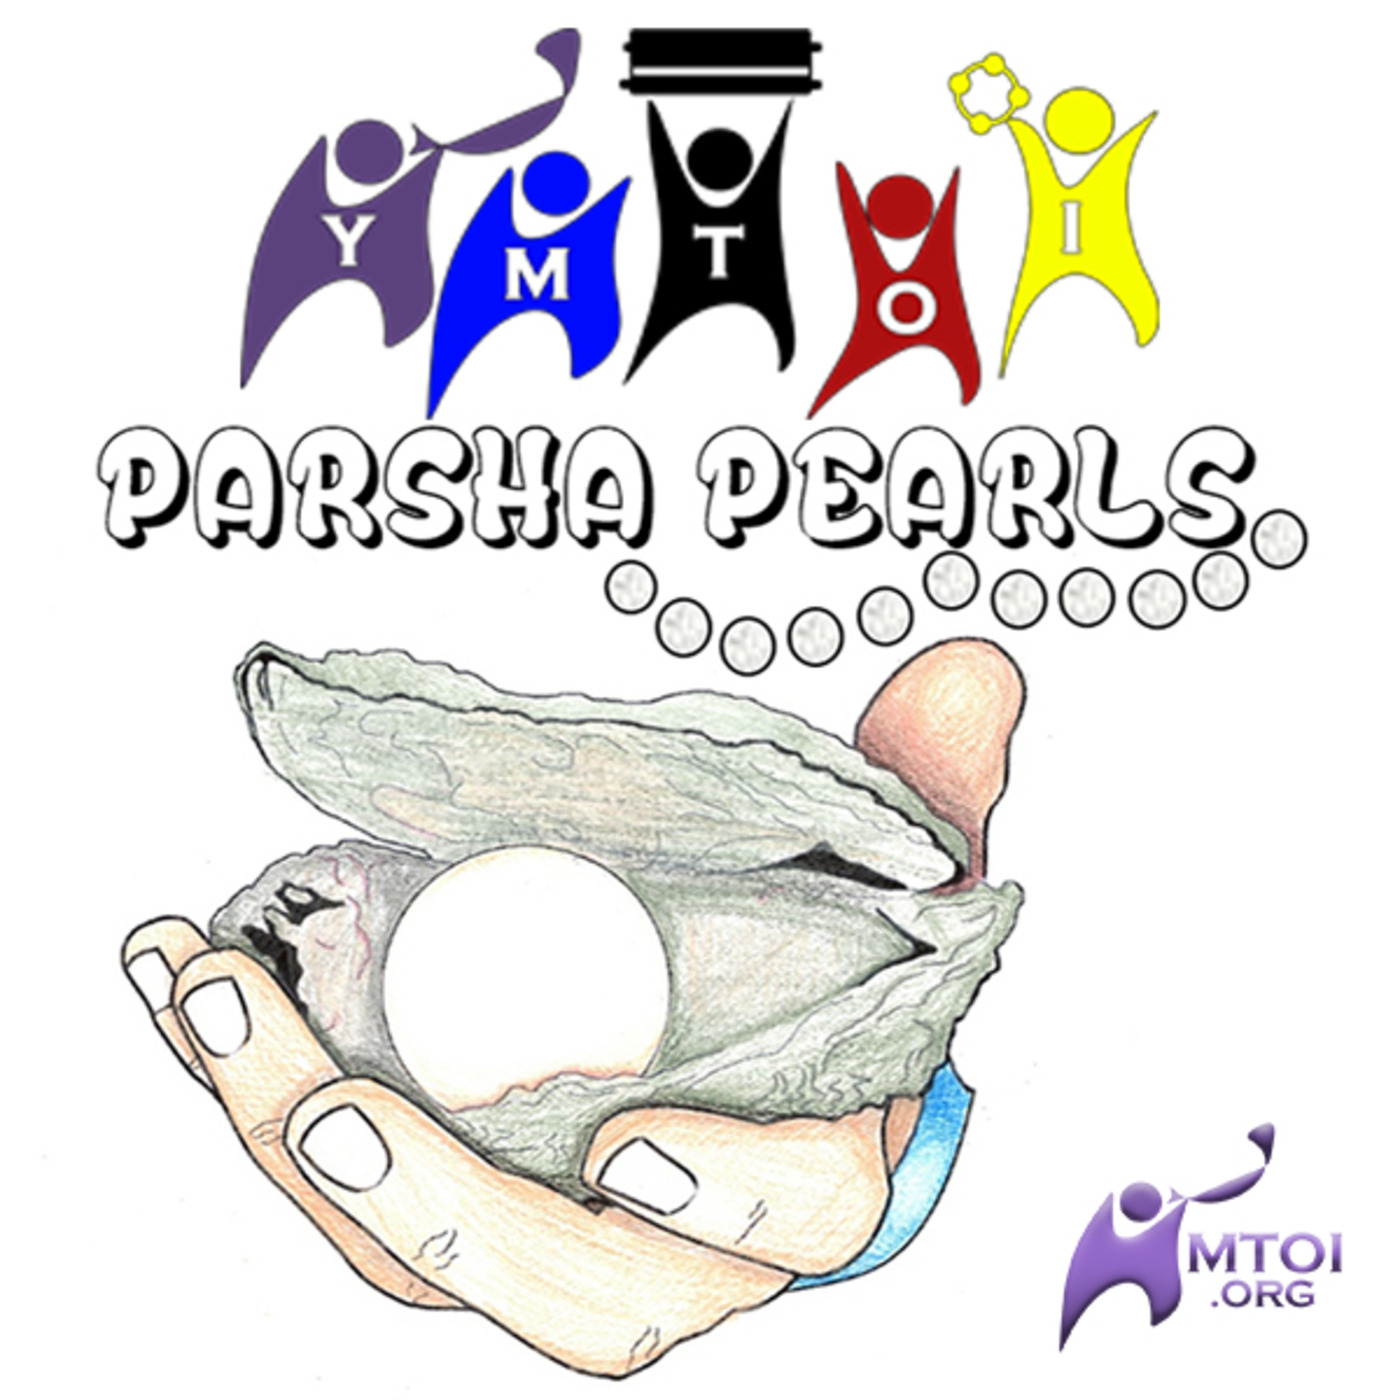 YMTOI Parsha Pearls 12.2 Vayechi – Chazak, Chazak, V'nitchazek